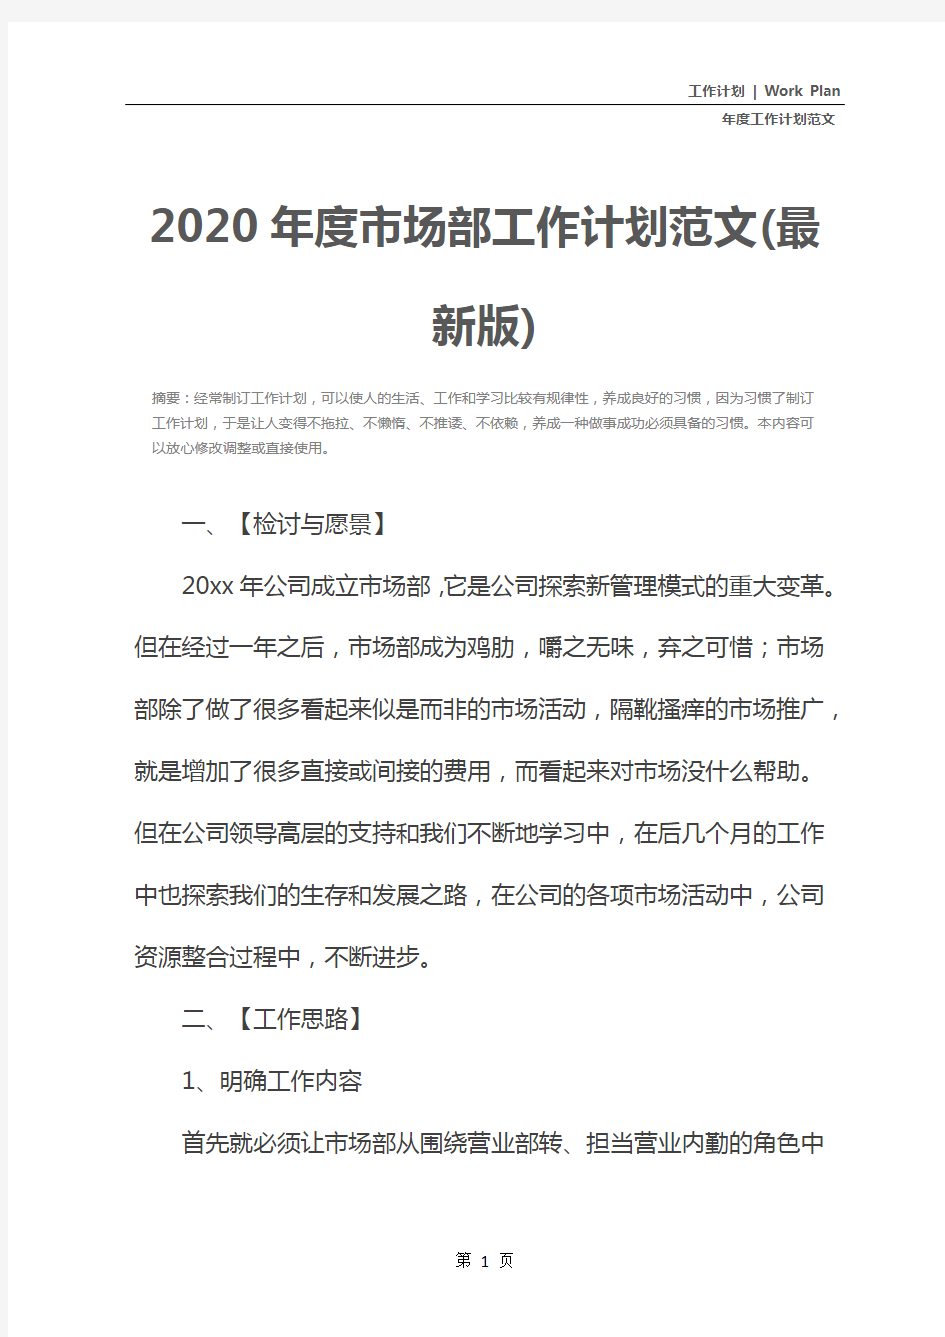 2020年度市场部工作计划范文(最新版)